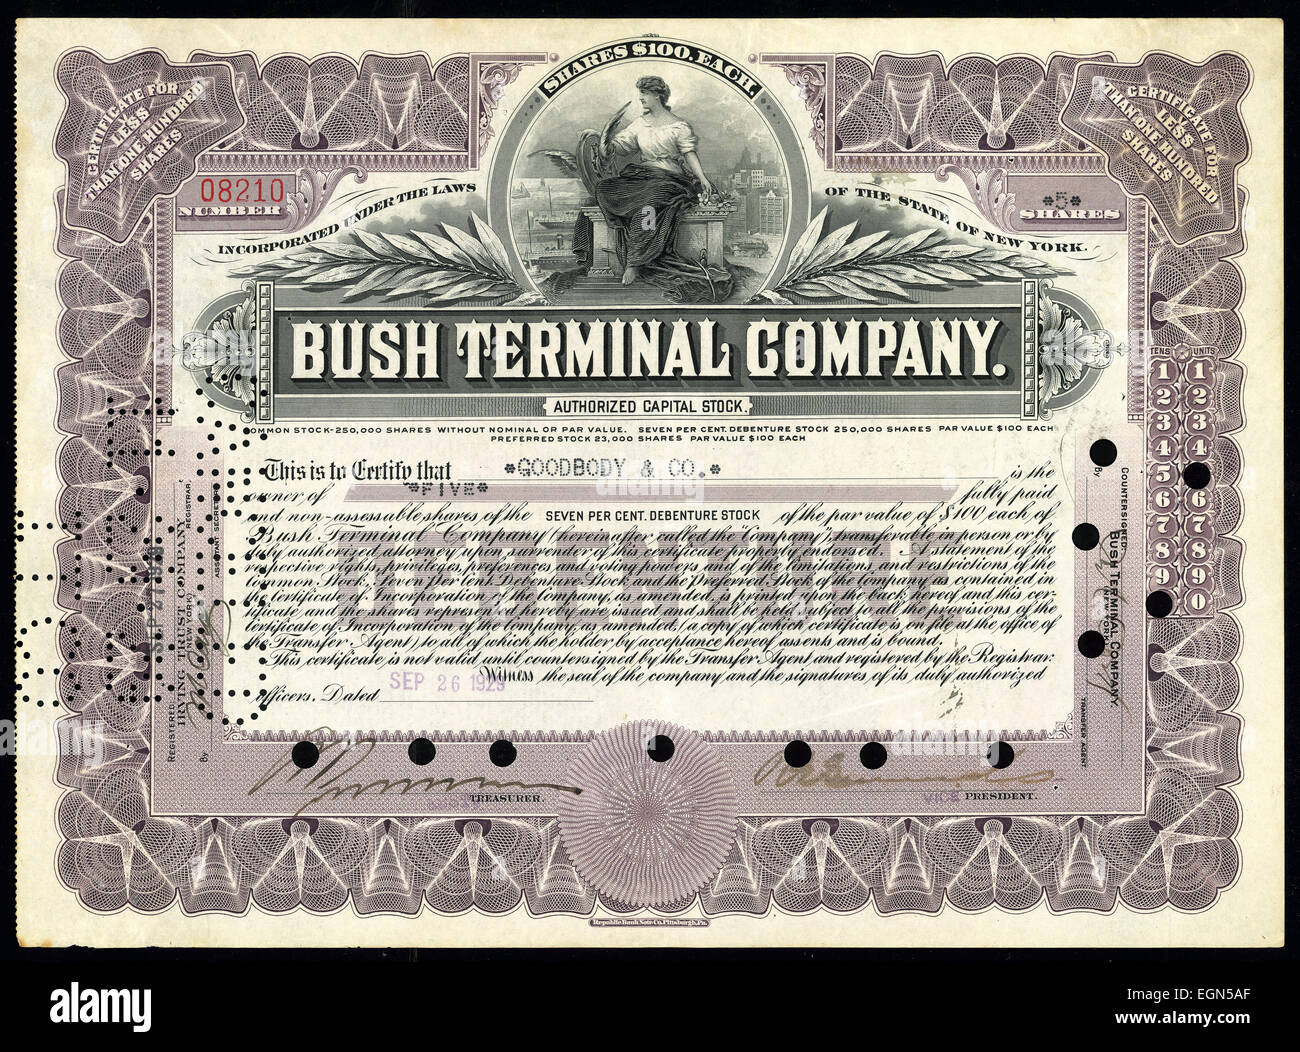 Authorized Capital Stock of Bush Terminal Company Stock Photo